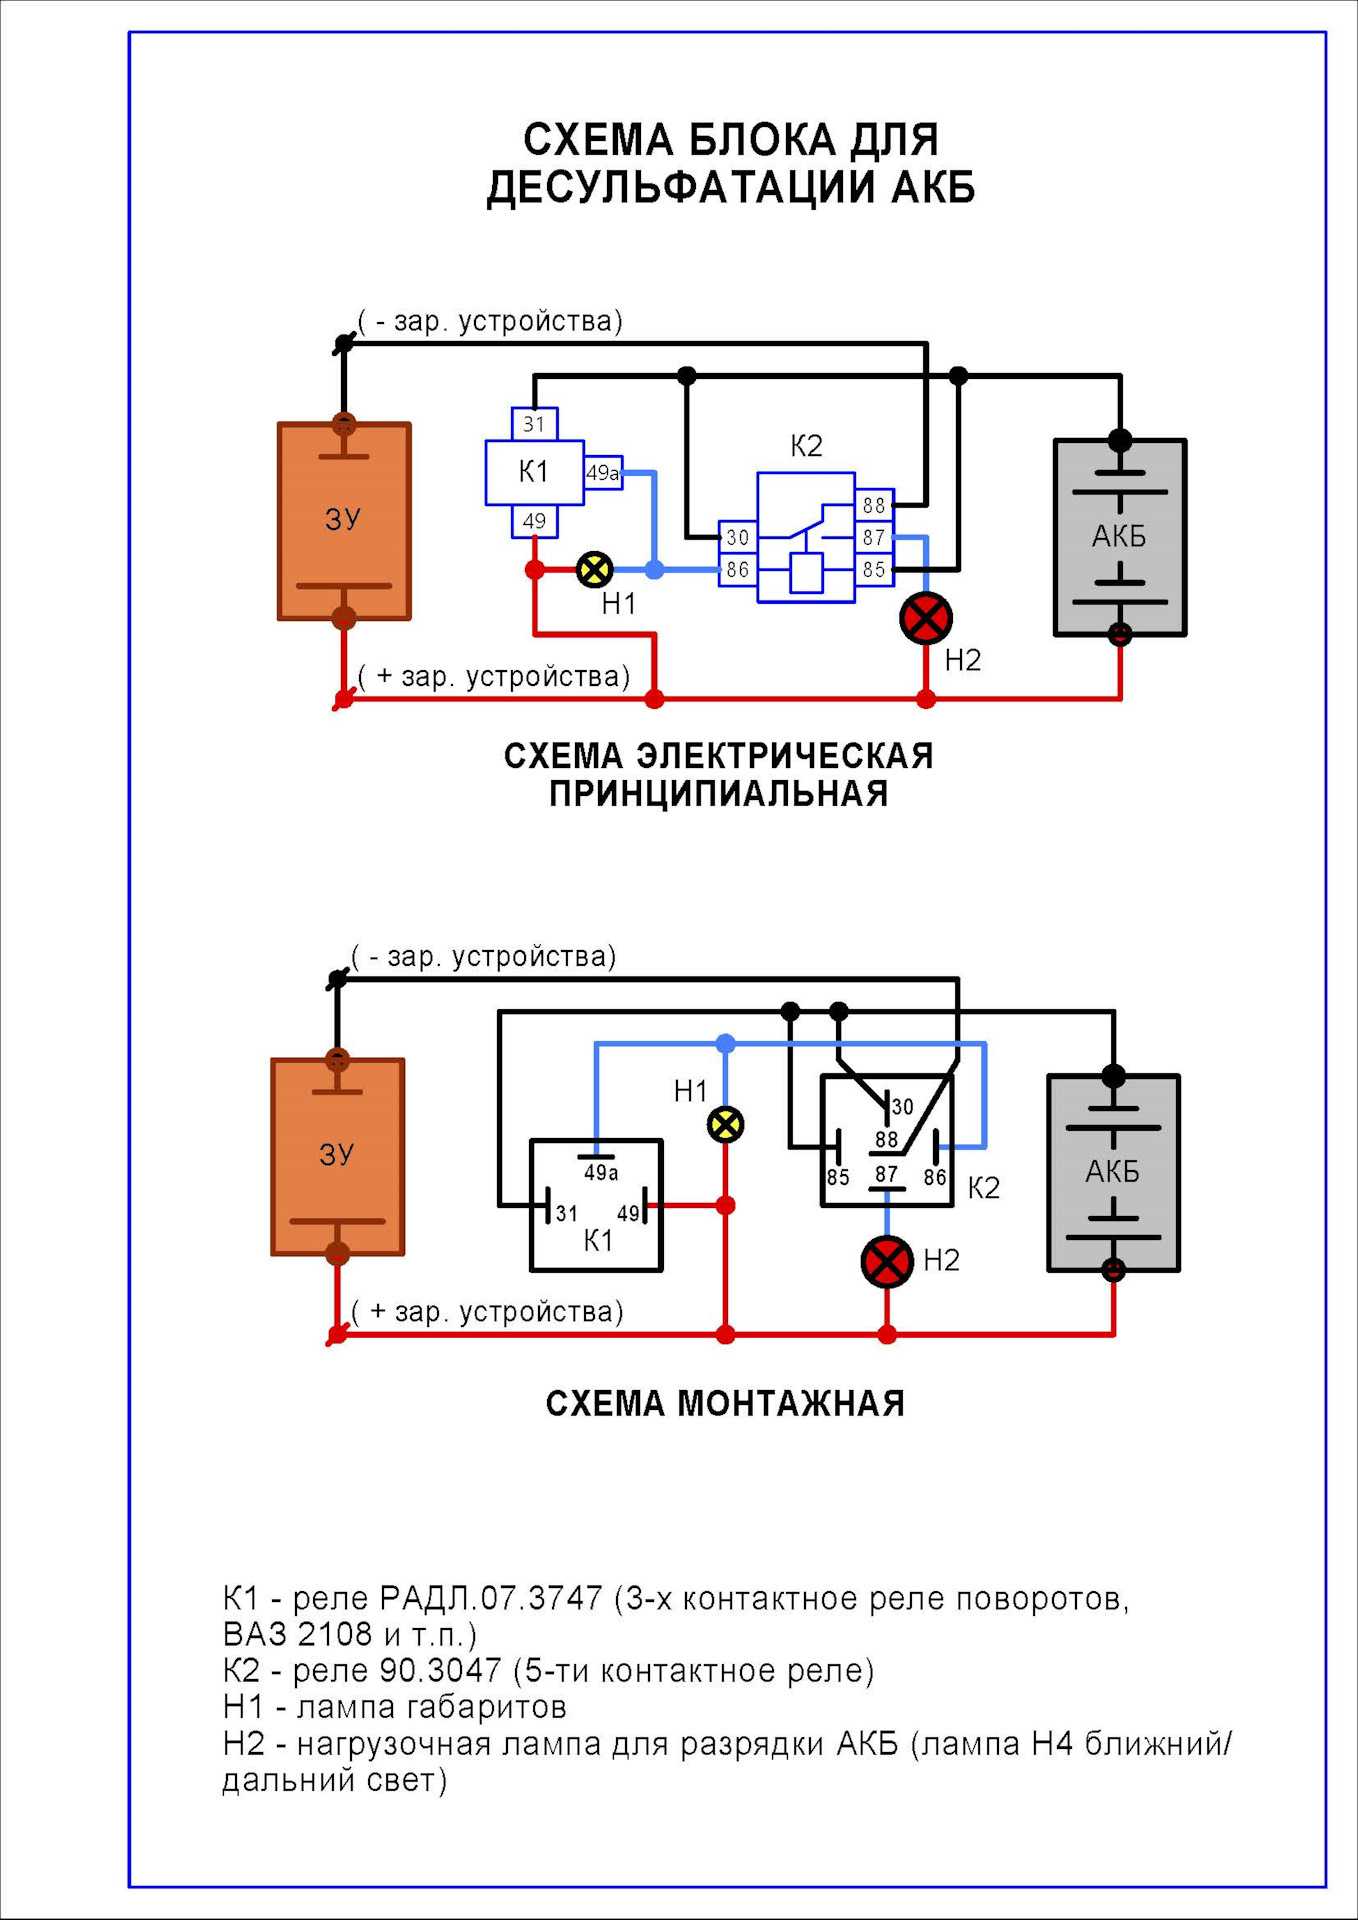 Десульфатация аккумулятора - схема, как провести десульфатацию кальциевой акб зарядным устройством